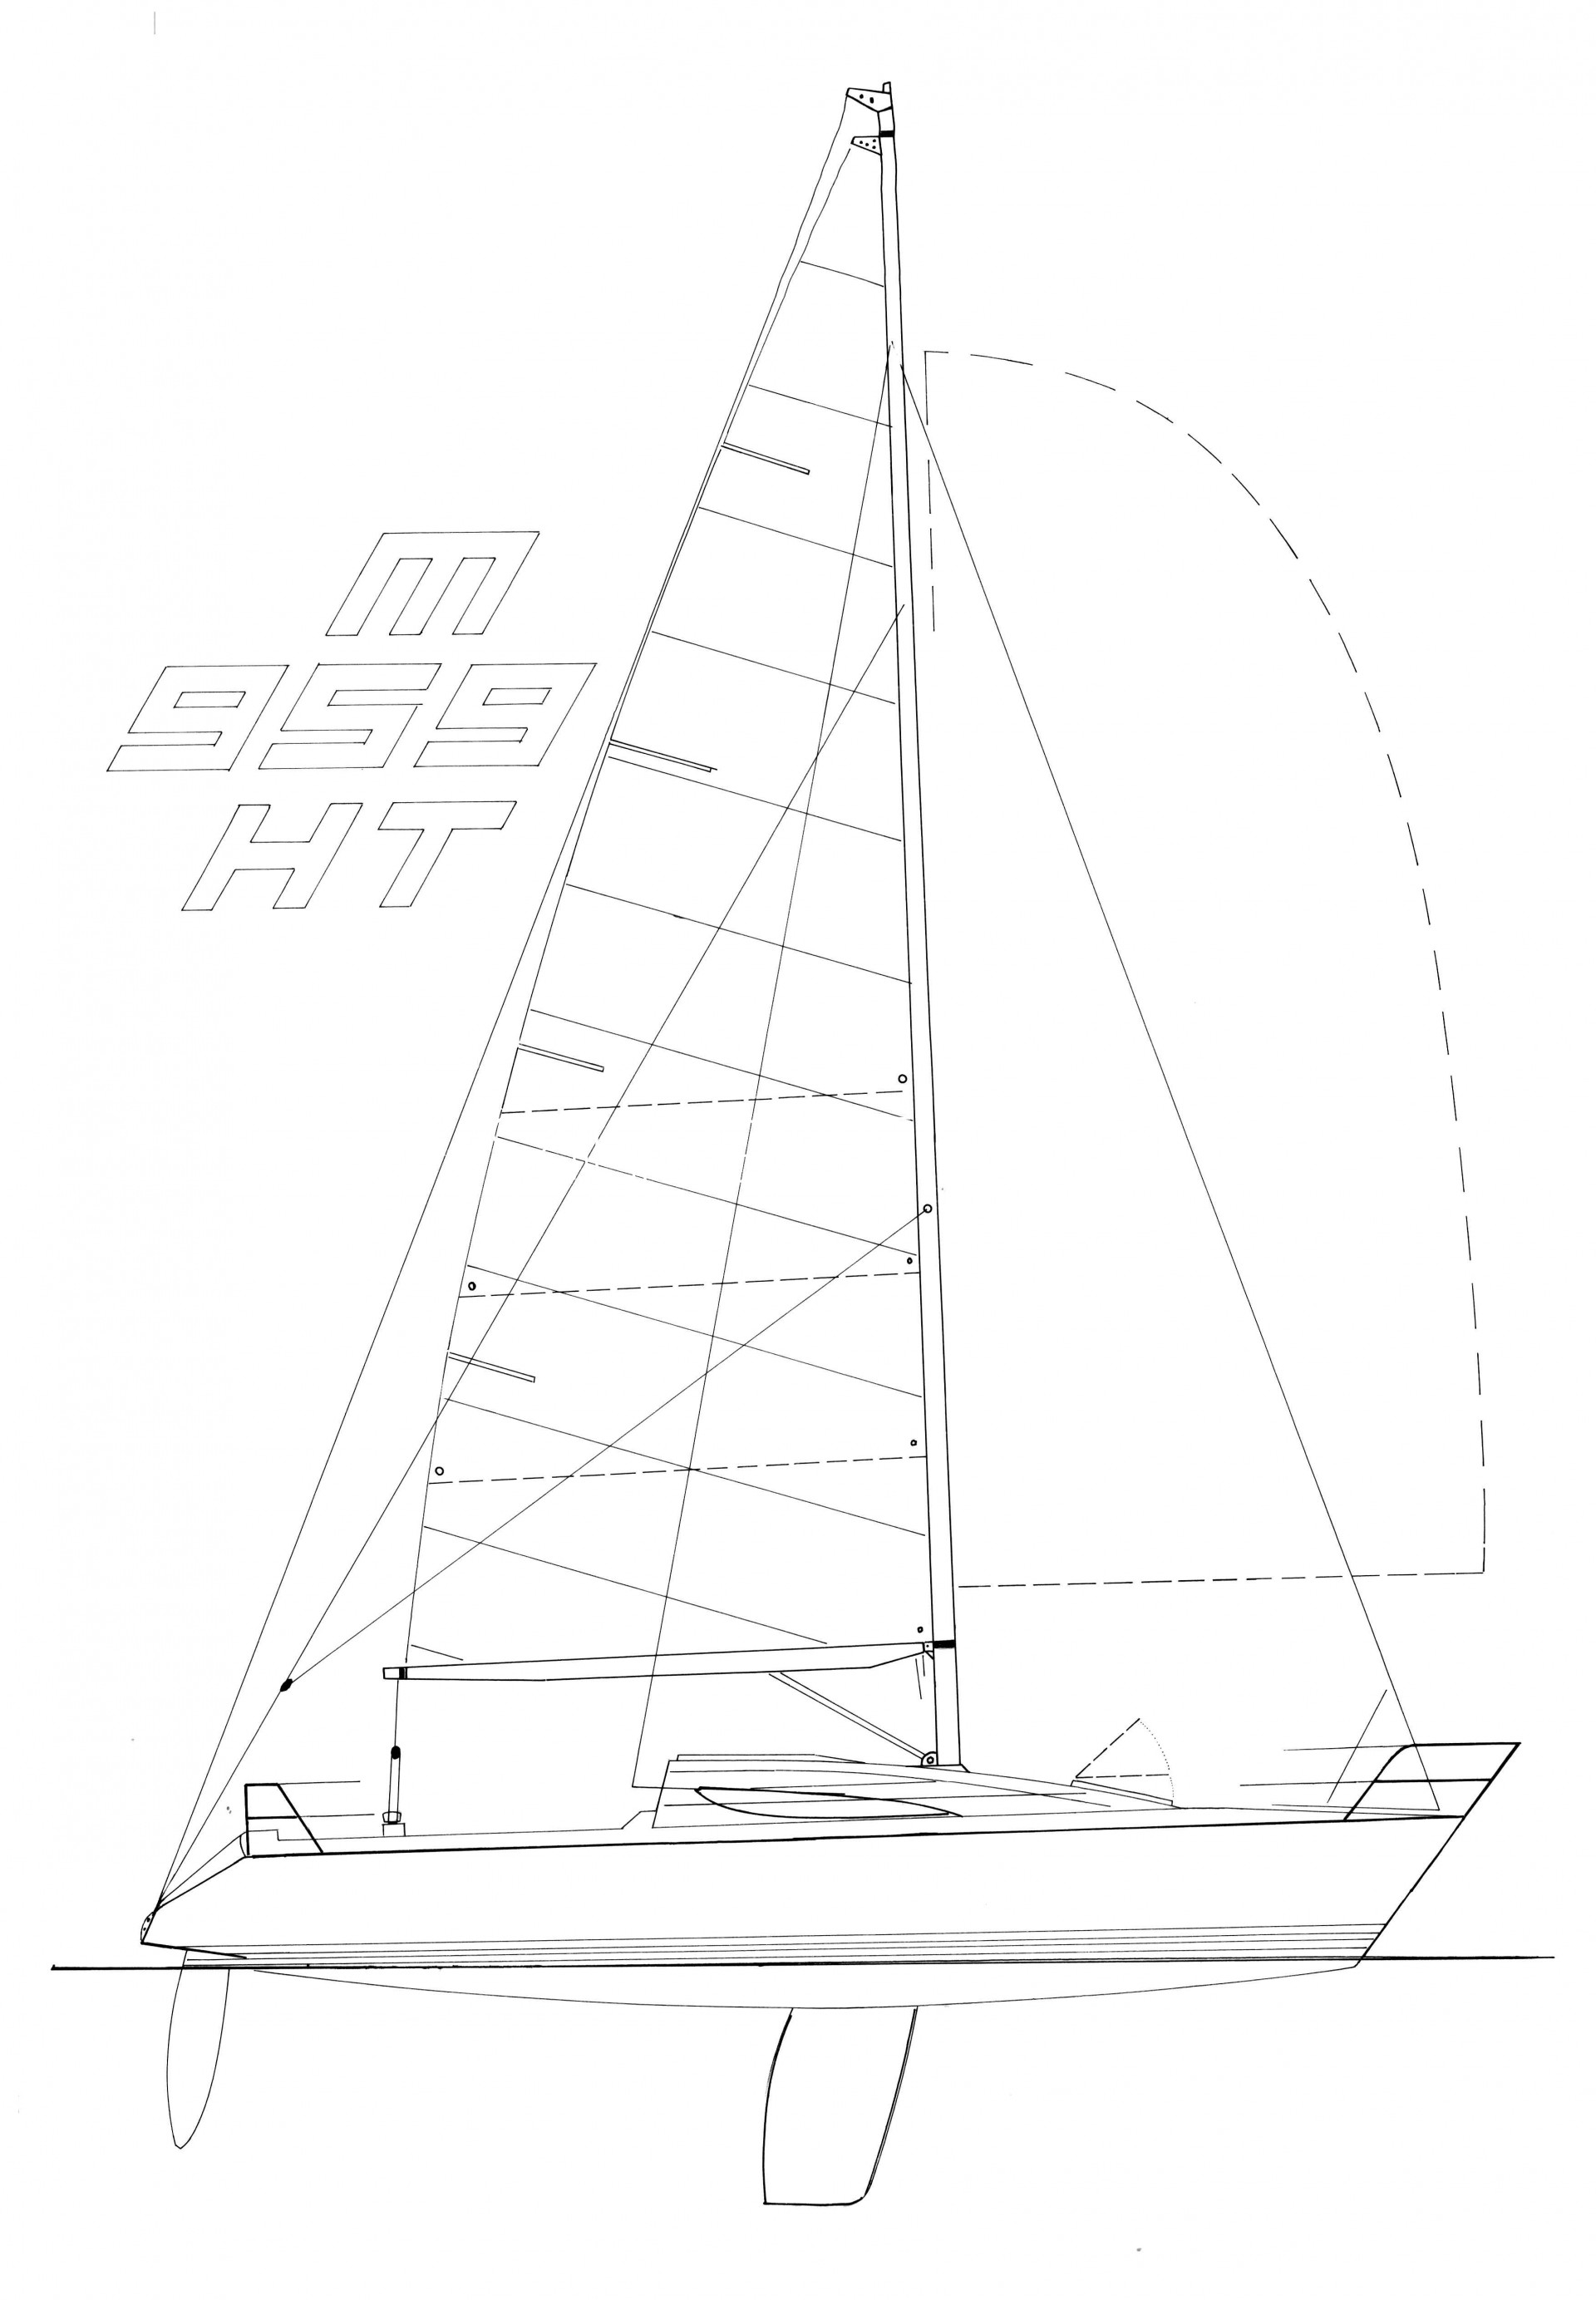 Mescal 959 half ton sailplan